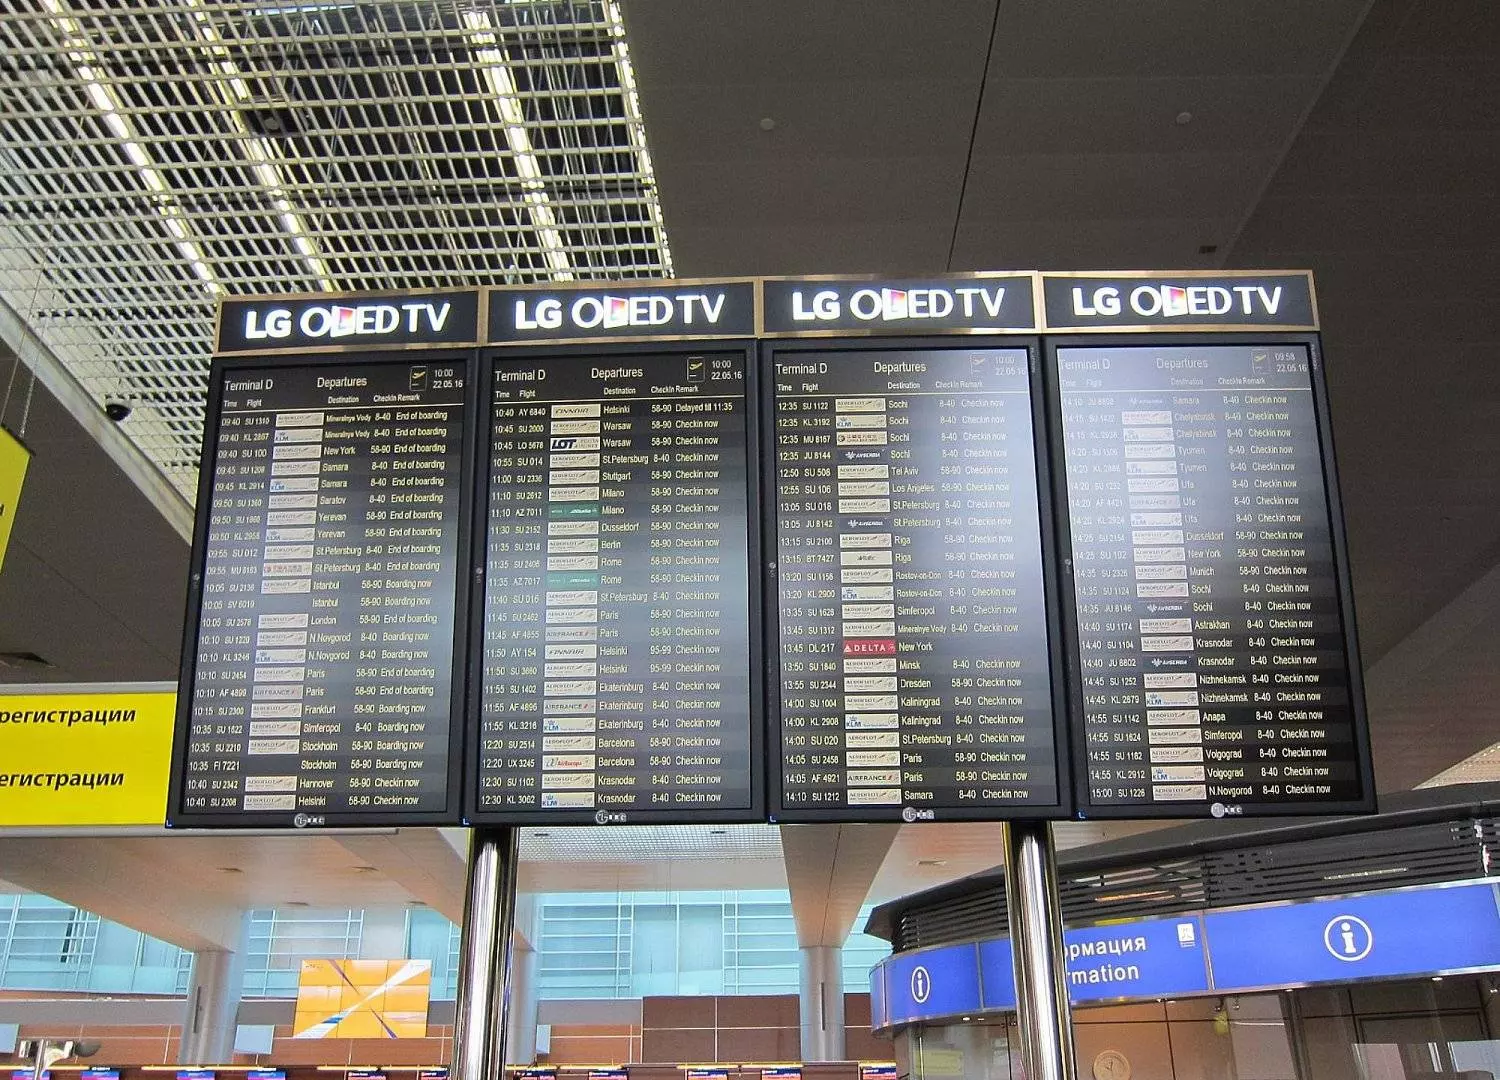 Аэропорт лос-анджелес интернэшнл (los angeles international airport) ✈ в городе лос-анджелес в сша